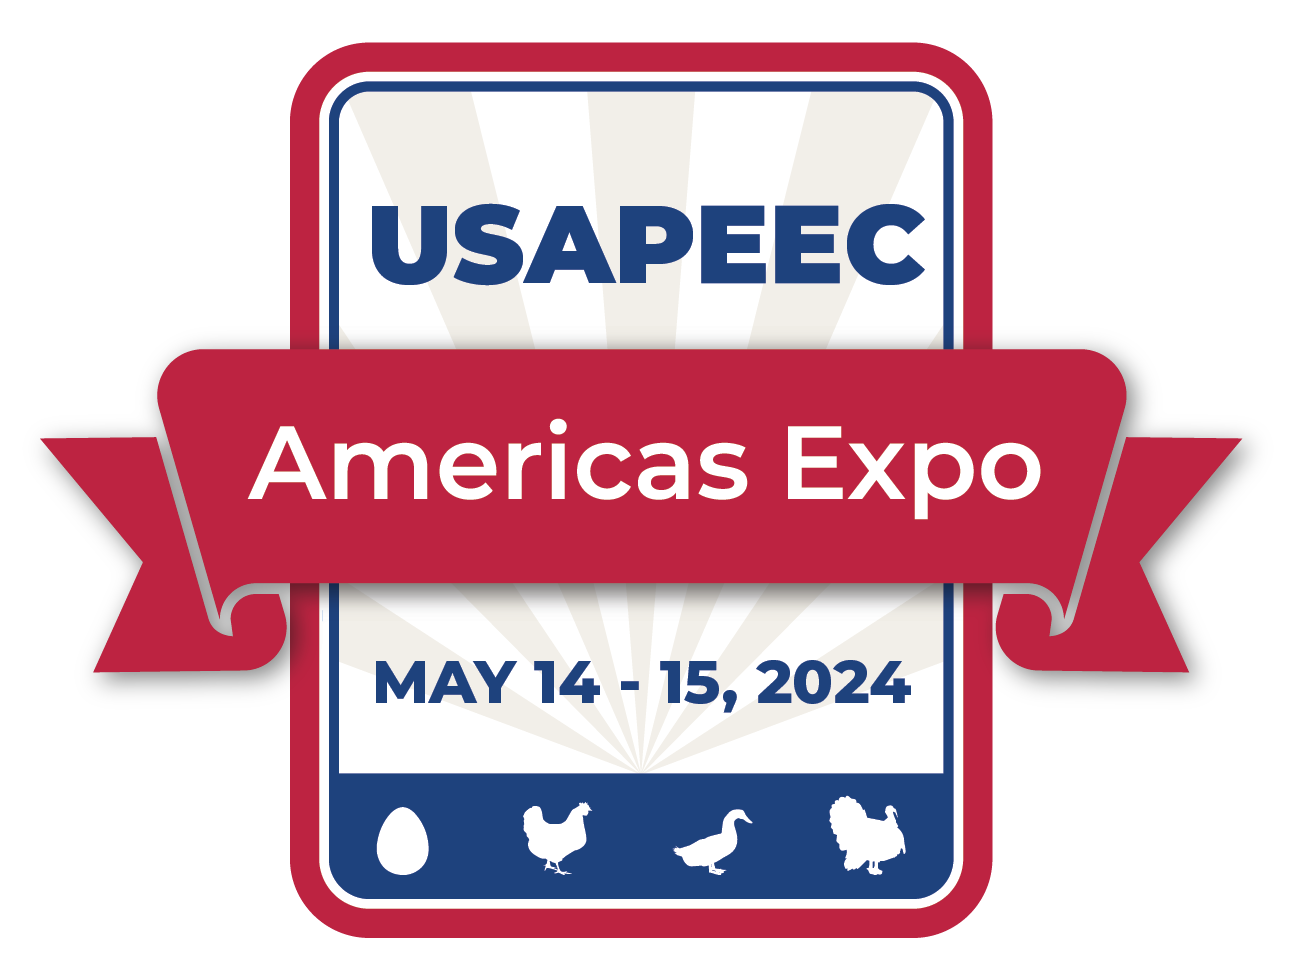 USAPEEC Americas Expo 2024 Logo